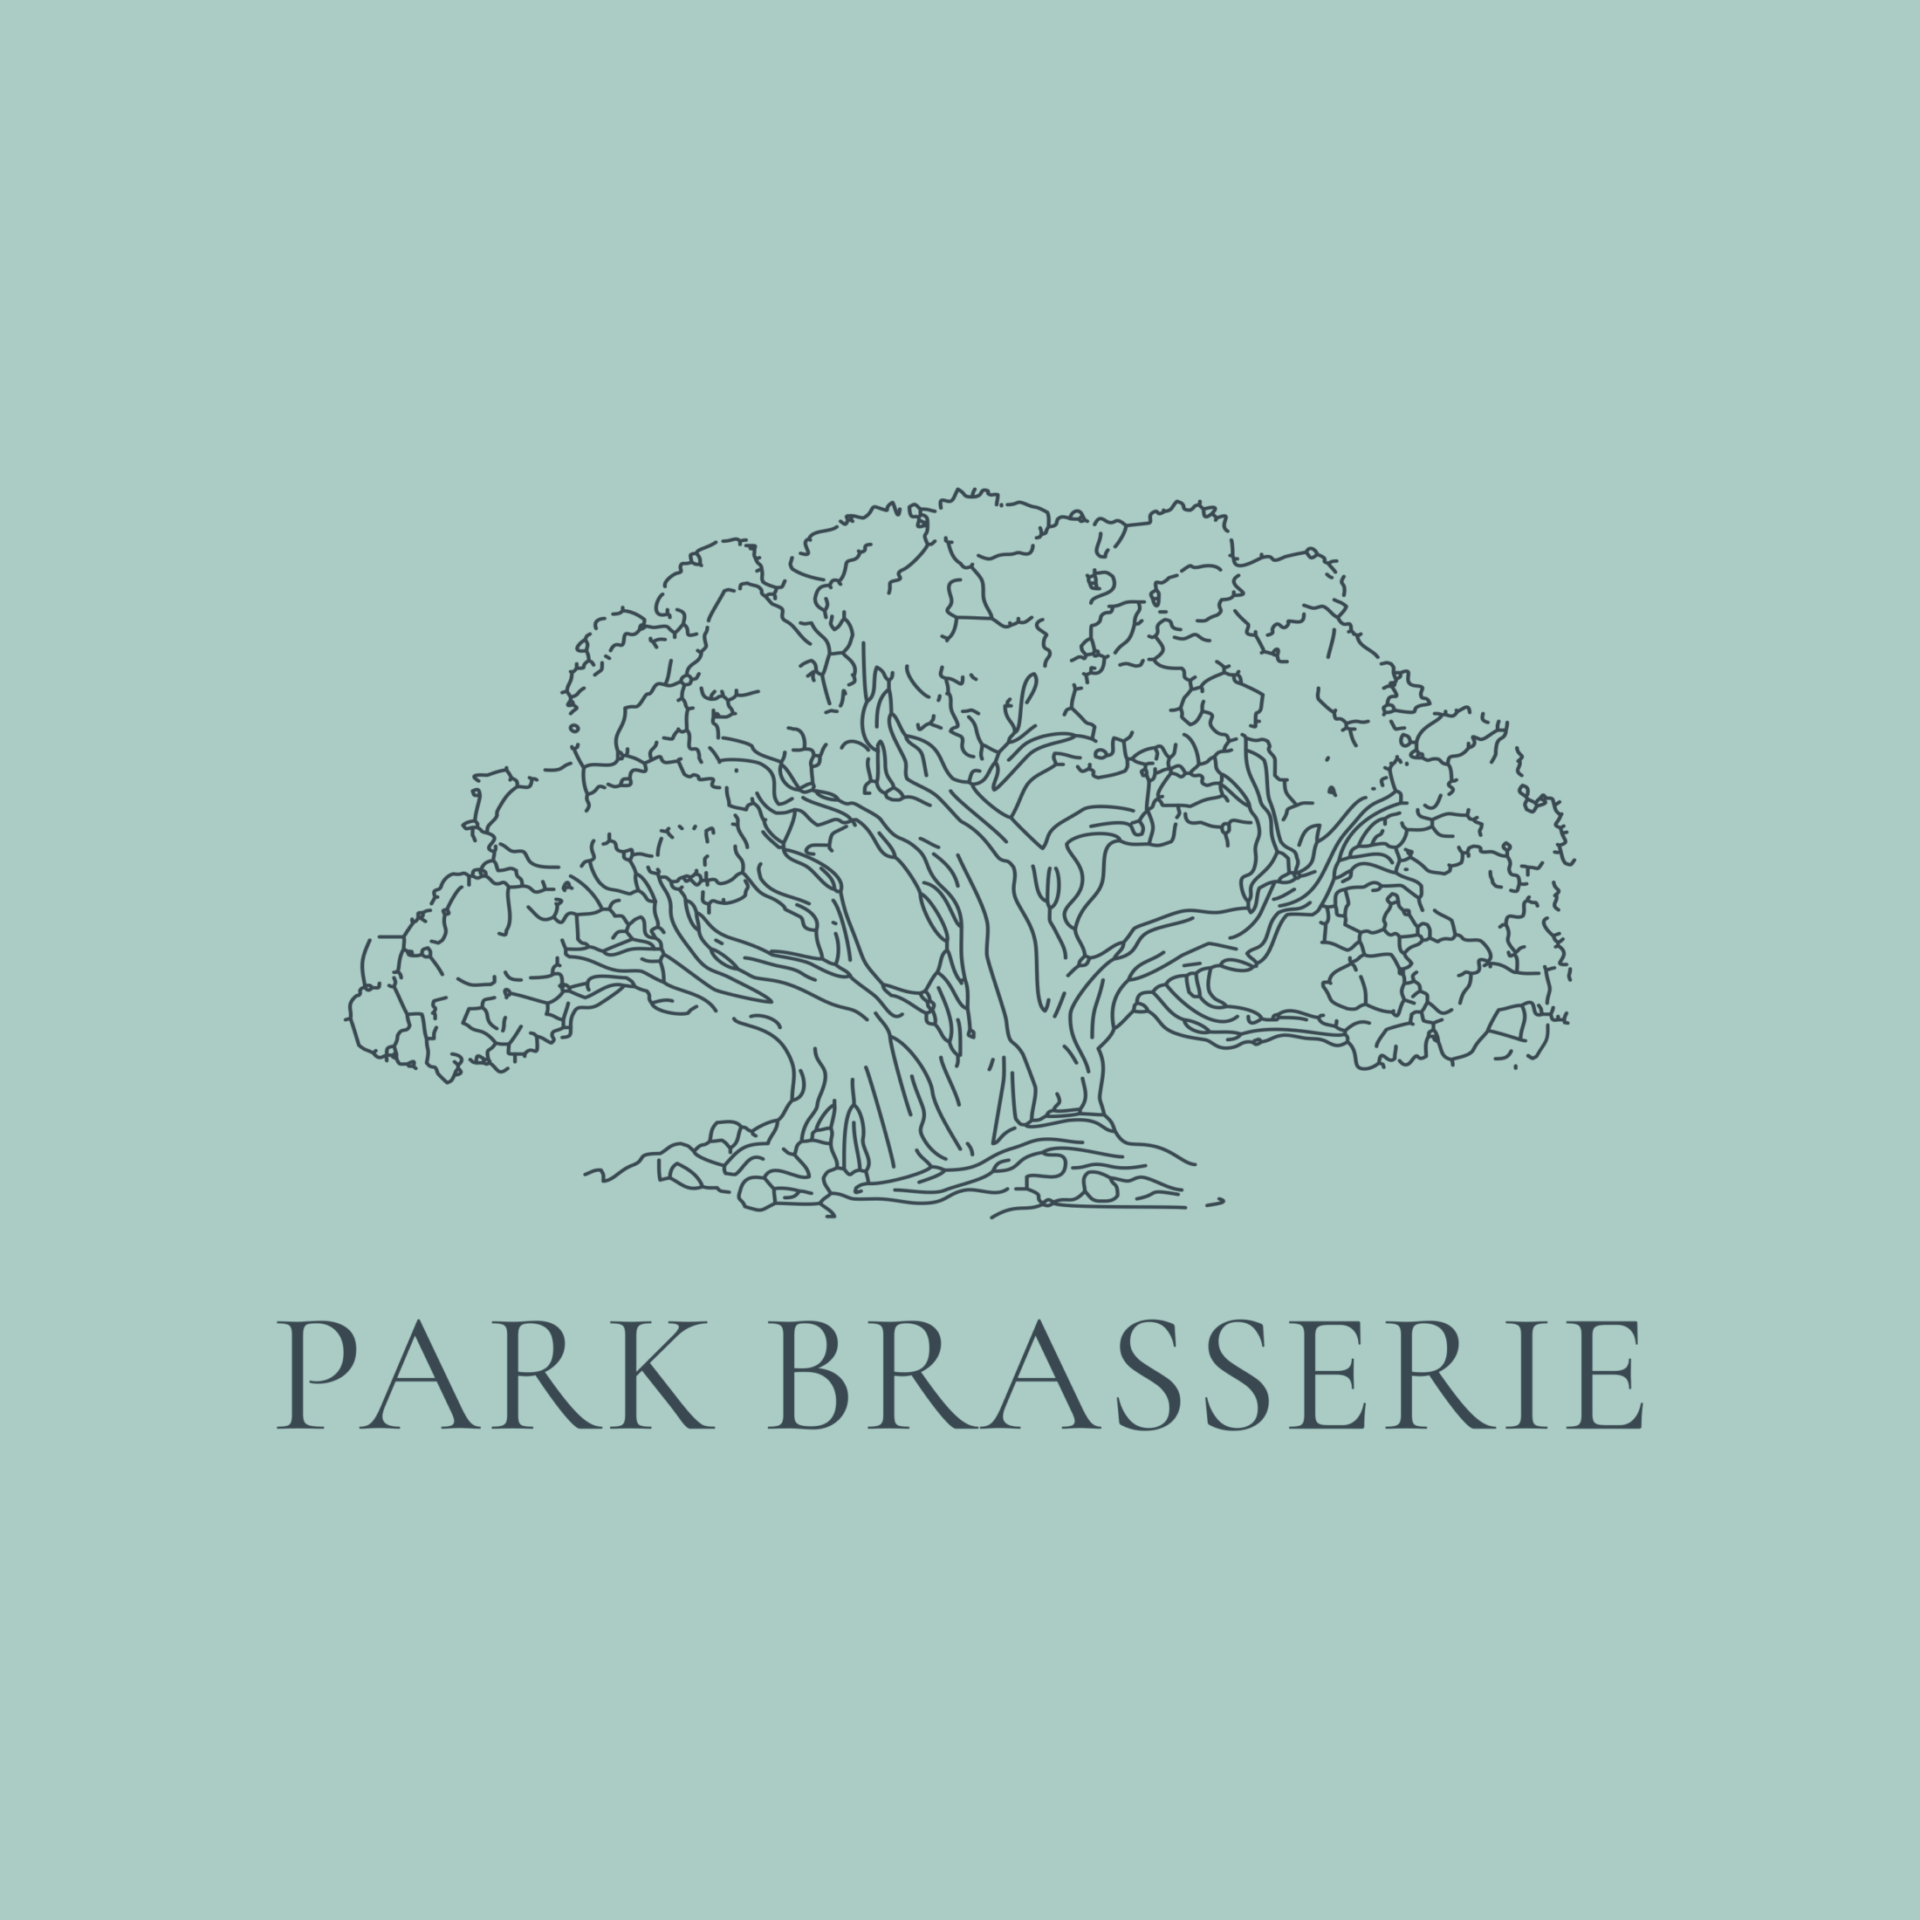 park brasserie full logo light green large